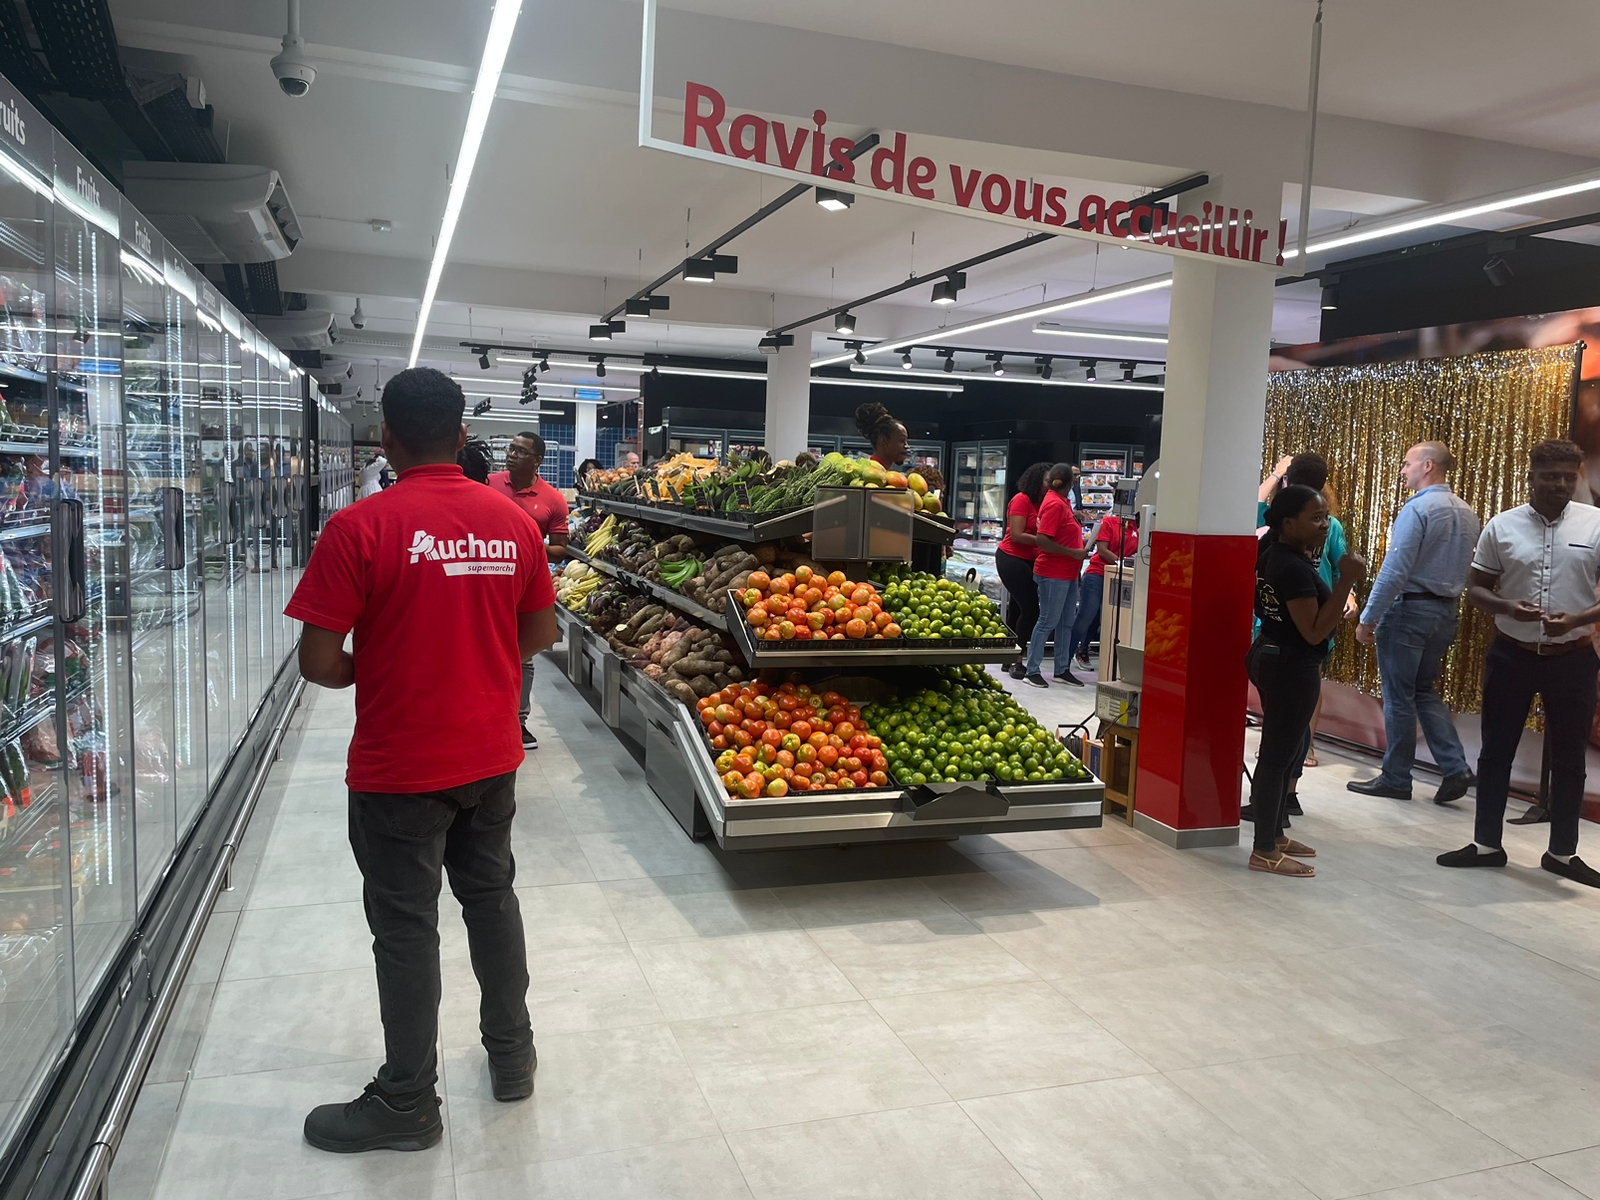     « Auchan supermarché » débarque en Guadeloupe

